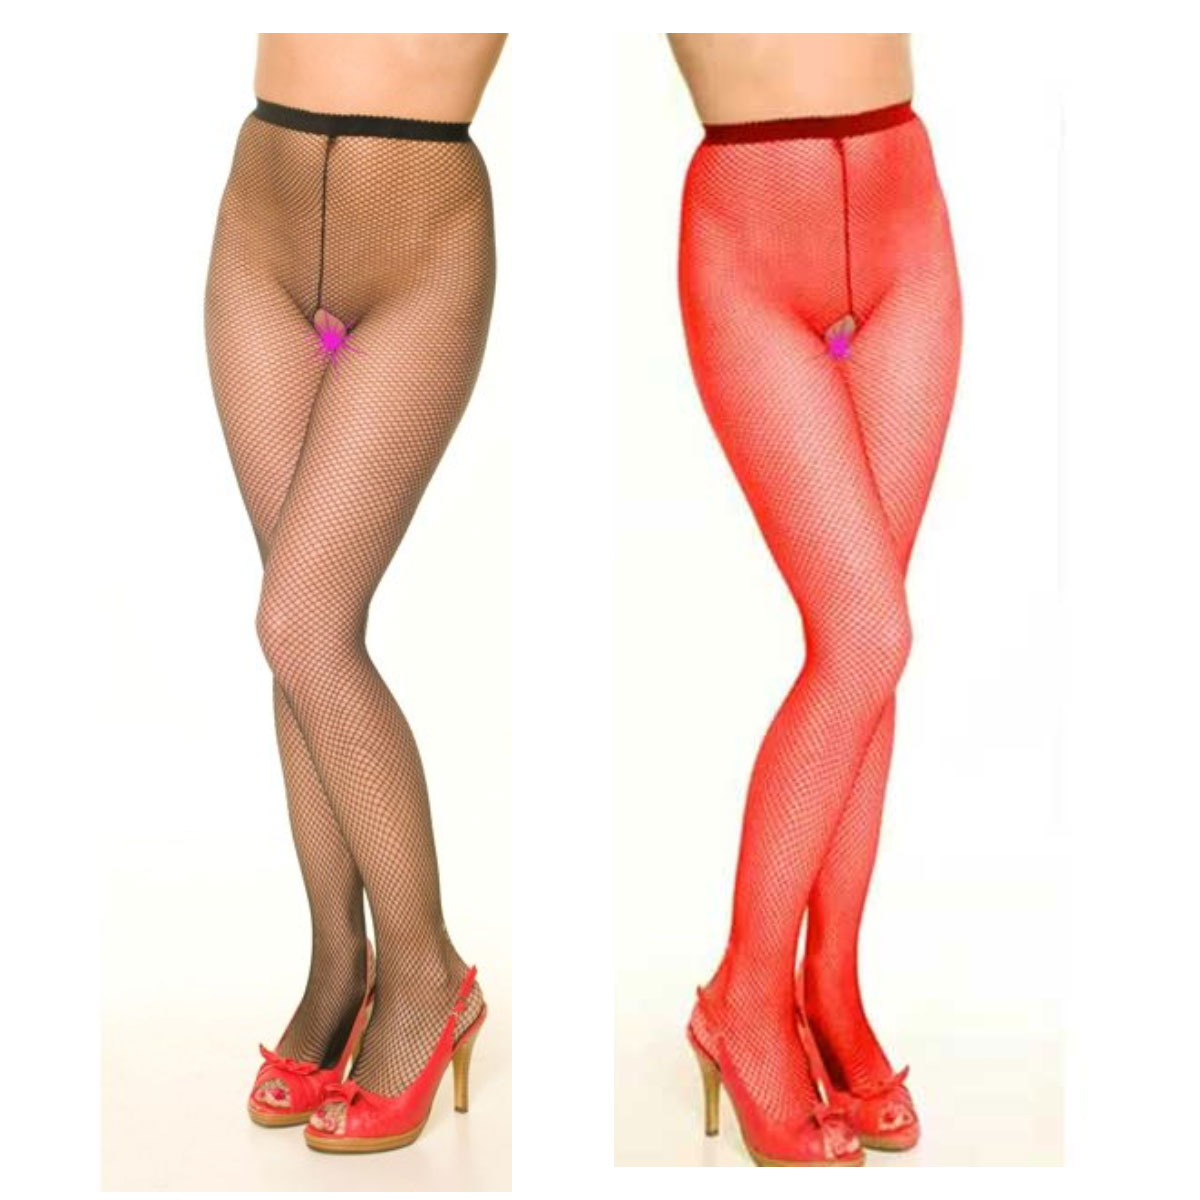 Ağı Açık İnce Göz Fileli Kadın Erotik Çorabı - Kırmızı Siyah Renk Seçenekli ART-935